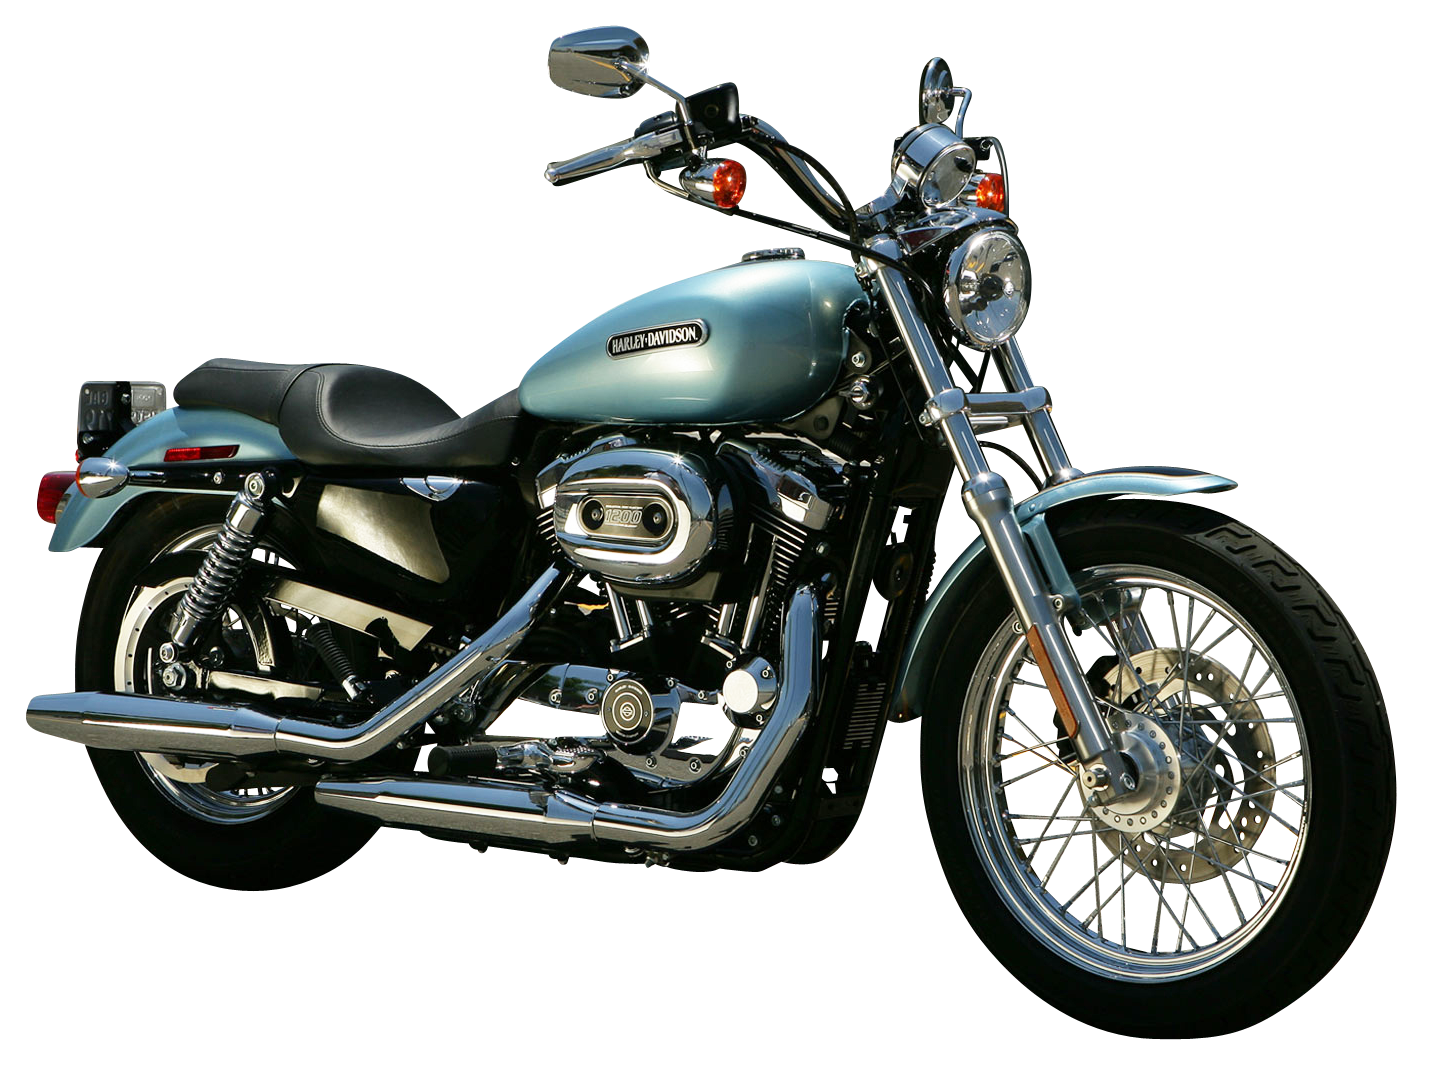 Harley Davidson Png Image For Free Download